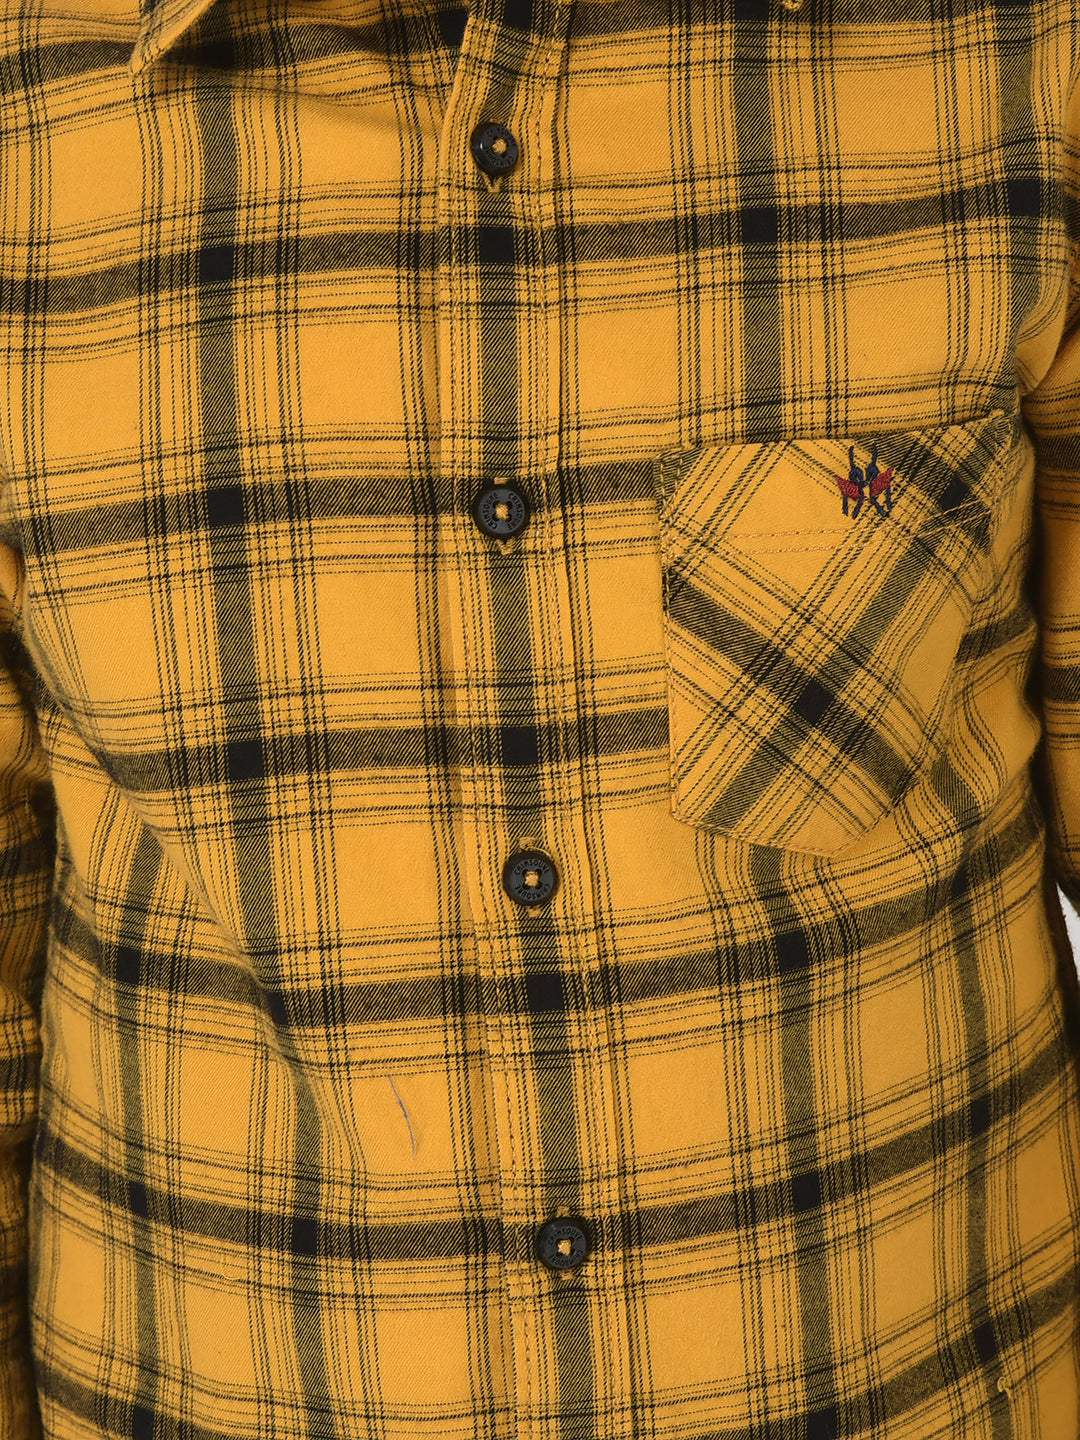  Mustard Shirt in Tartan Checks